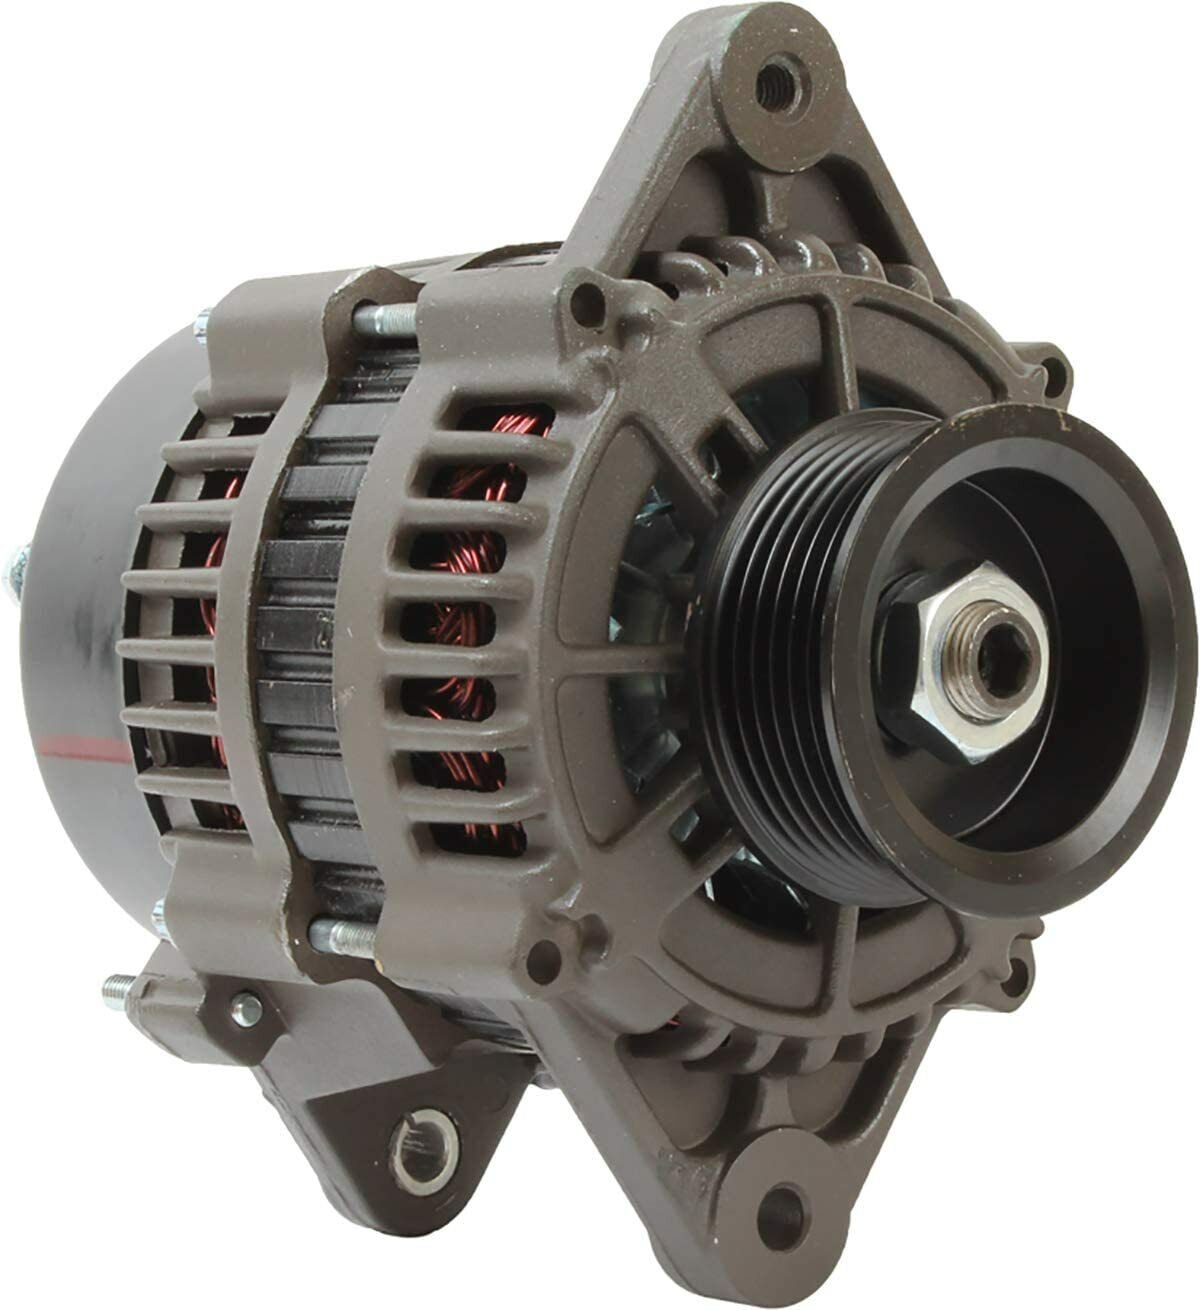 Alternator for Mercruiser Inboard Sterndrive 350 454 Mag MPI Horizon 4.3 5.7 7.4